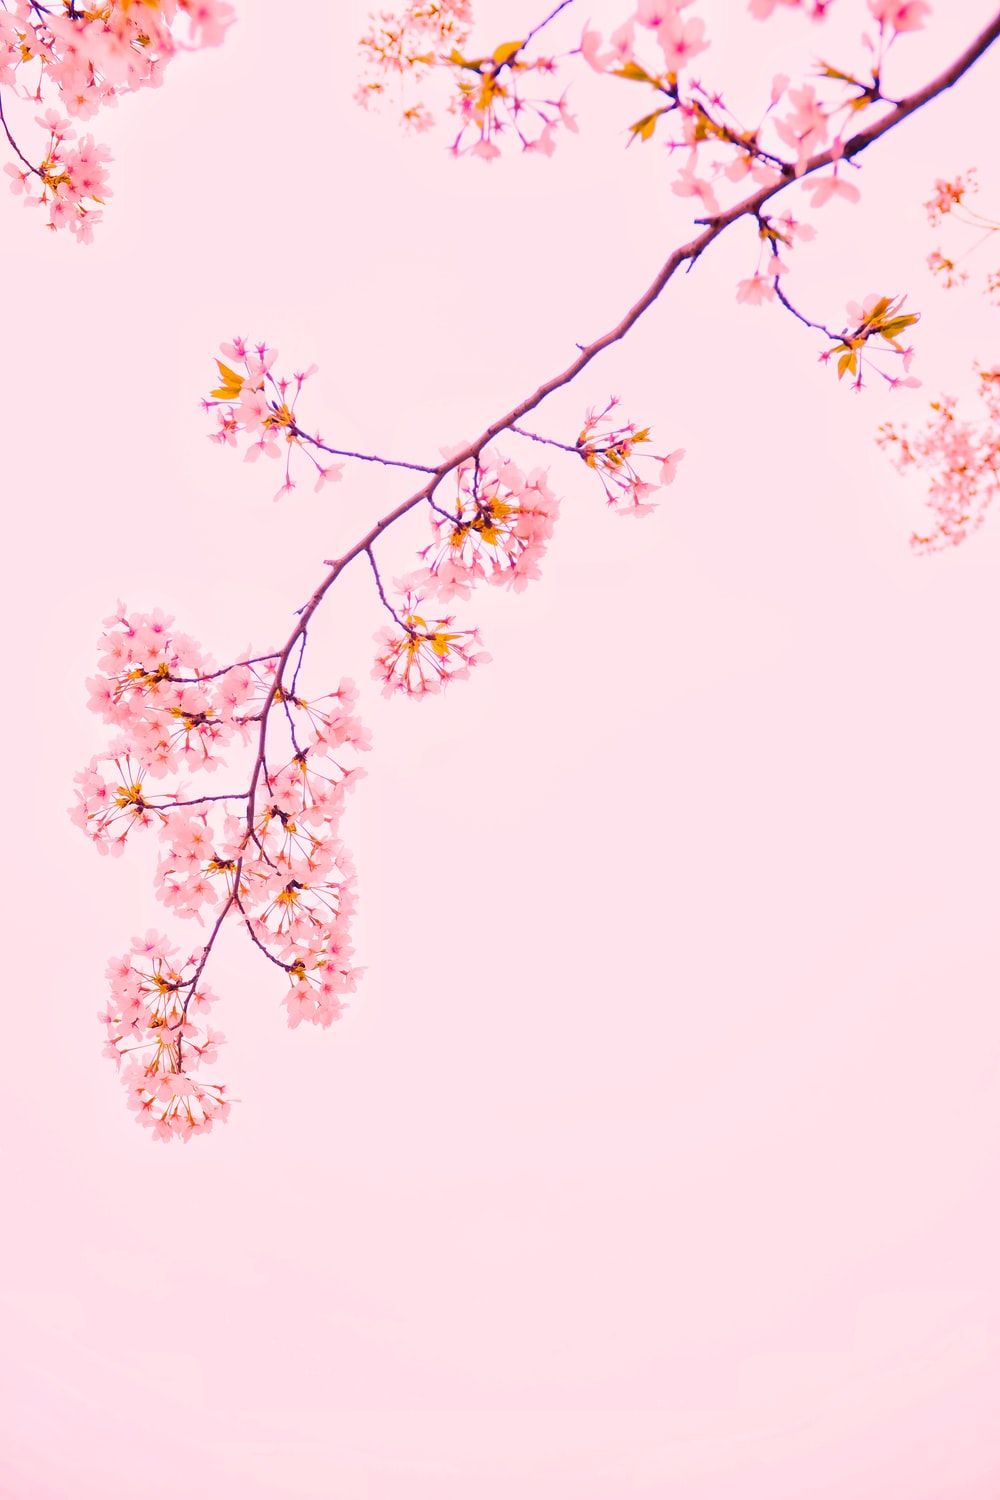 Pink Wallpaper: Free HD Download [HQ]